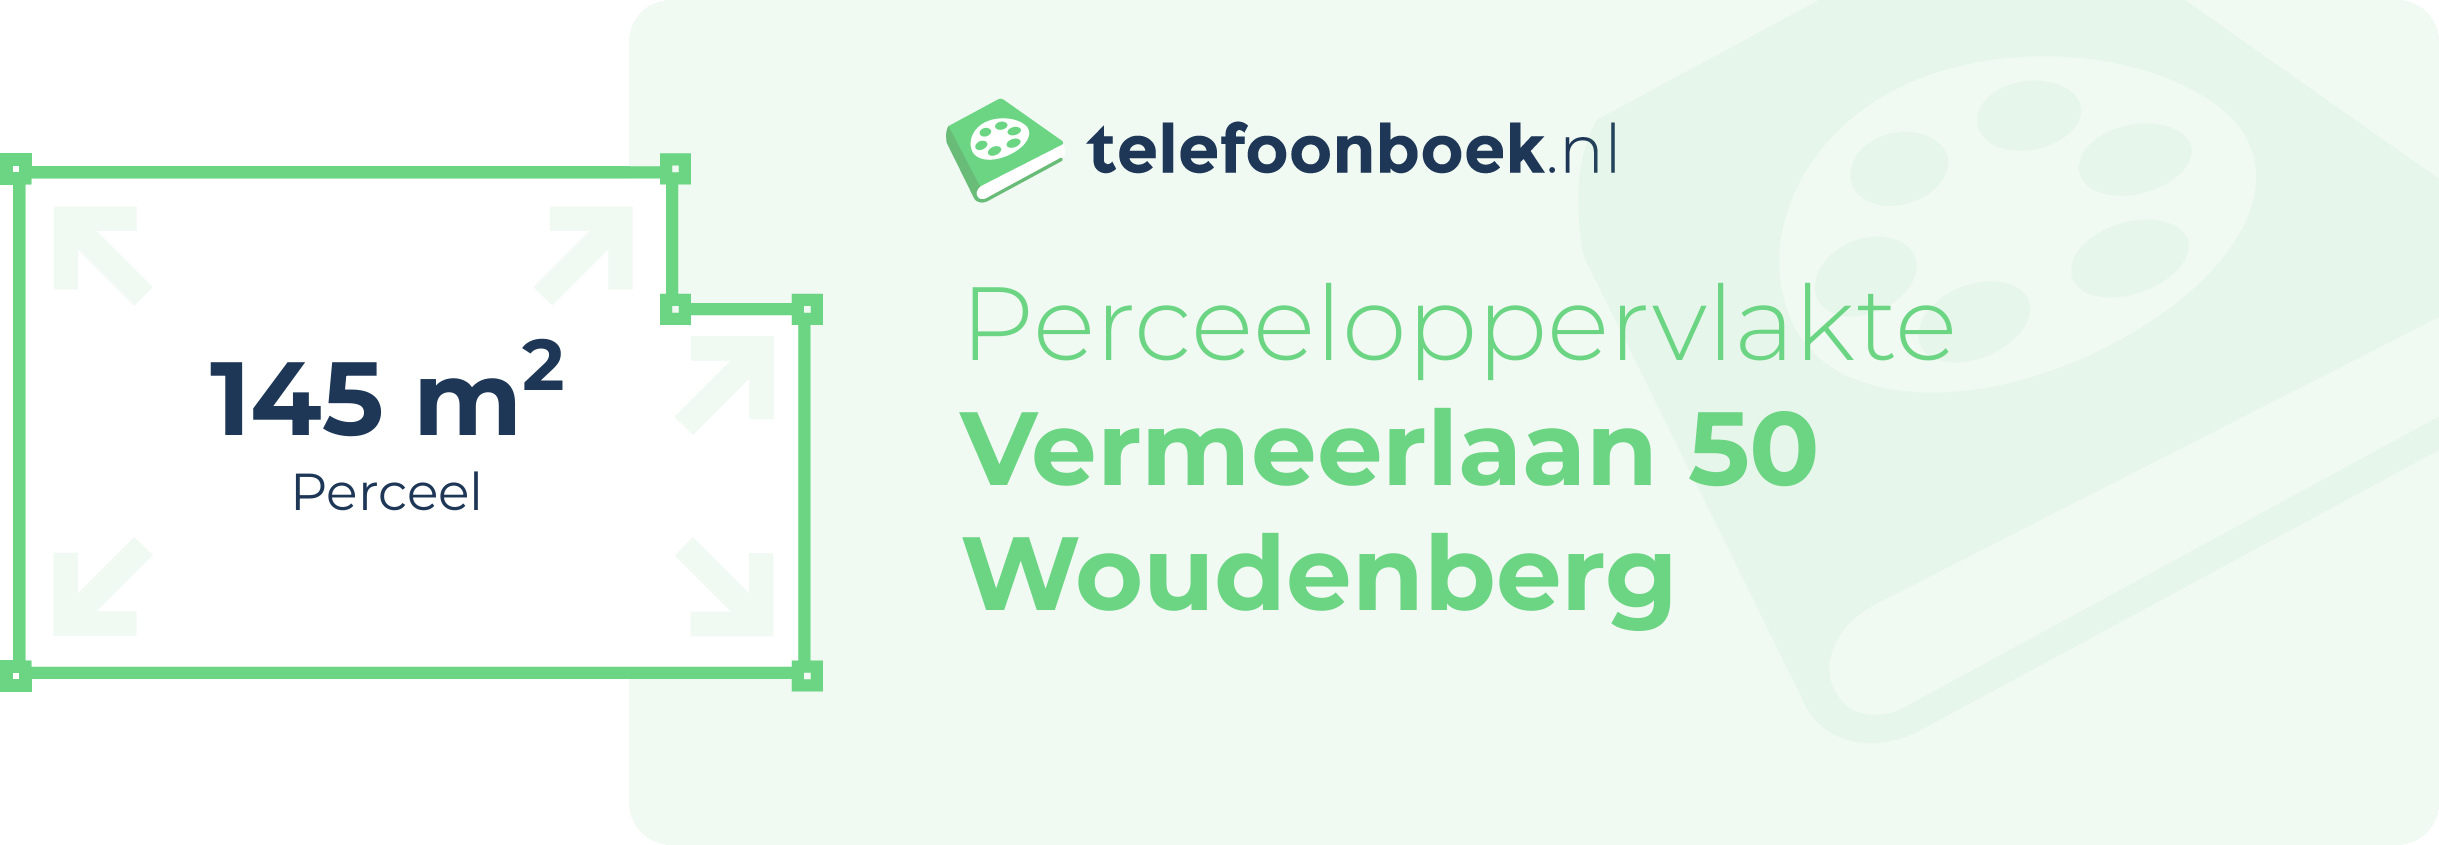 Perceeloppervlakte Vermeerlaan 50 Woudenberg